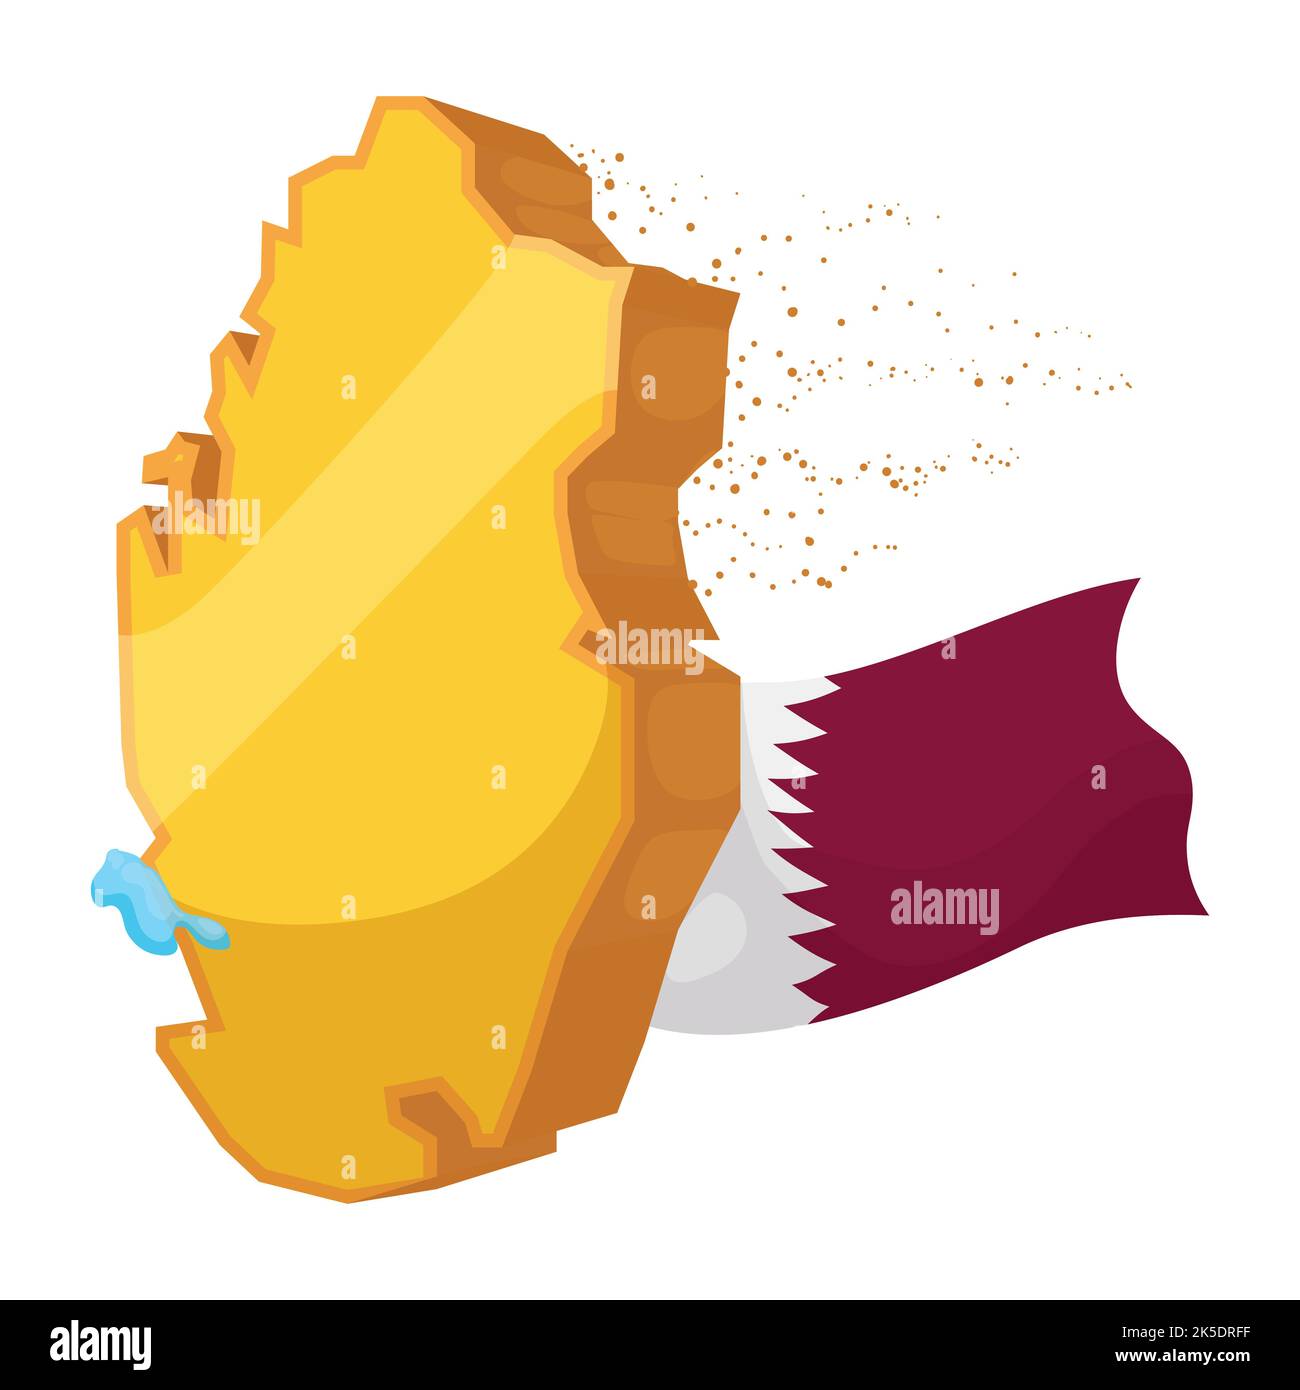 Mappa estrusa e dorata del Qatar con polvere di sabbia, gocce d'acqua e bandiera nazionale ondulata. Design in stile cartoon su sfondo bianco. Illustrazione Vettoriale